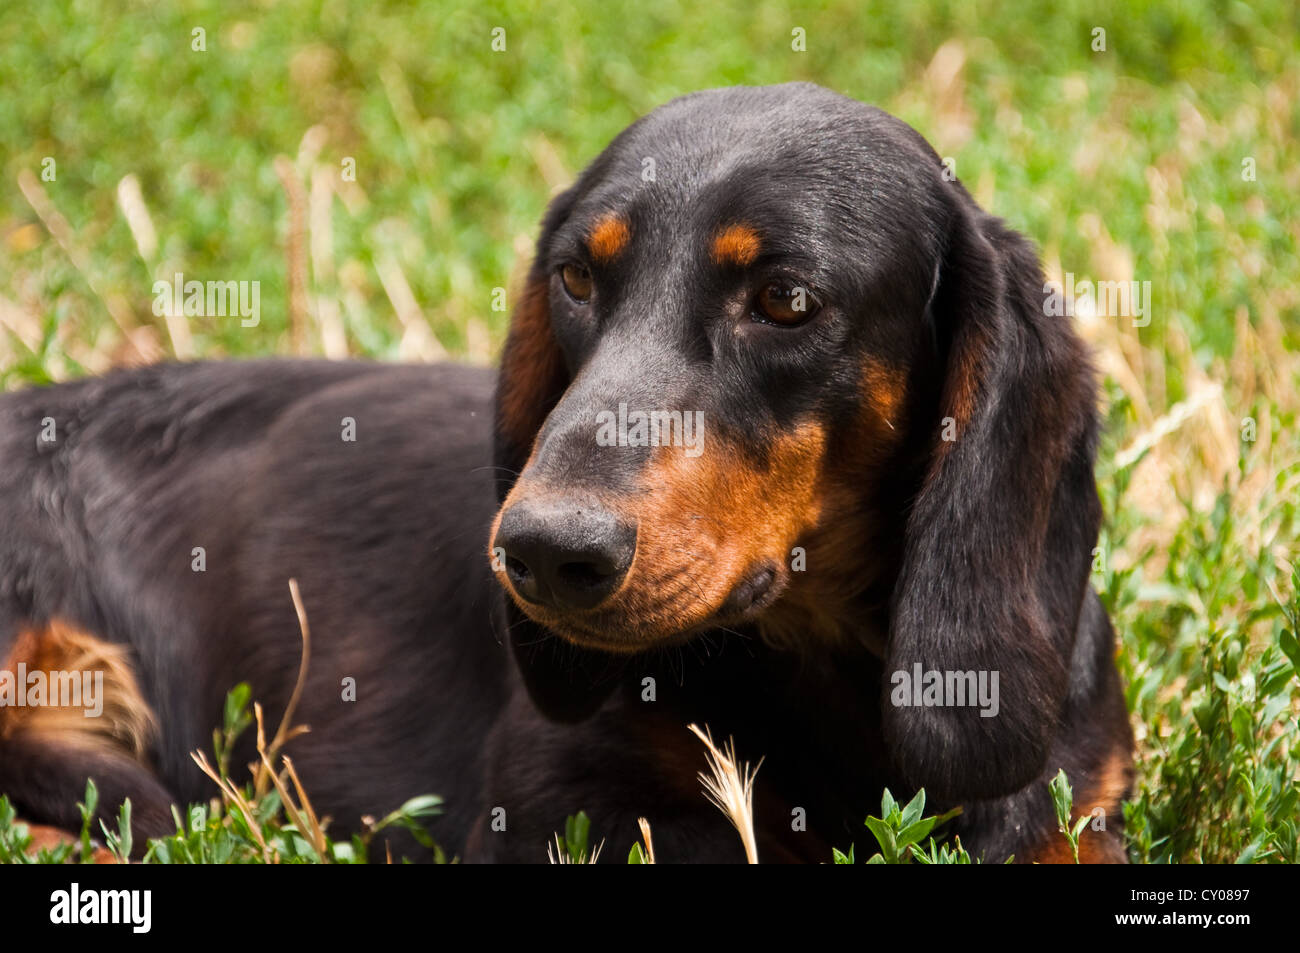 Porträt von schwarzen und braunen zwei Jahre alten Hund Dackel in den Garten legen in dem Rasen hautnah Stockfoto